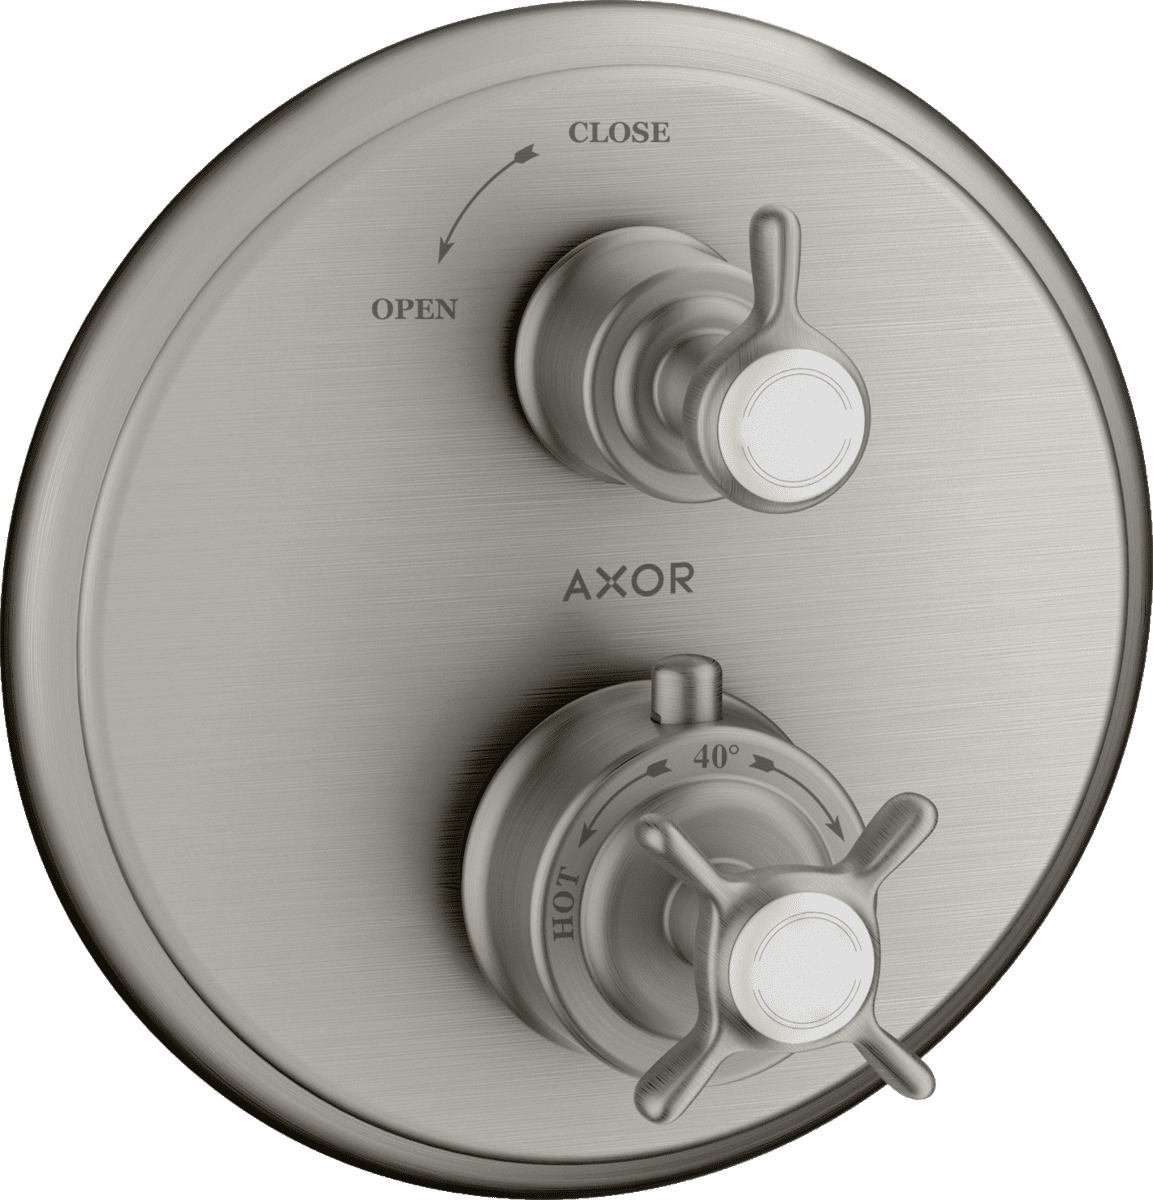 εικόνα του HANSGROHE AXOR Montreux Thermostat for concealed installation with cross handle and shut-off valve #16800800 - Stainless Steel Optic